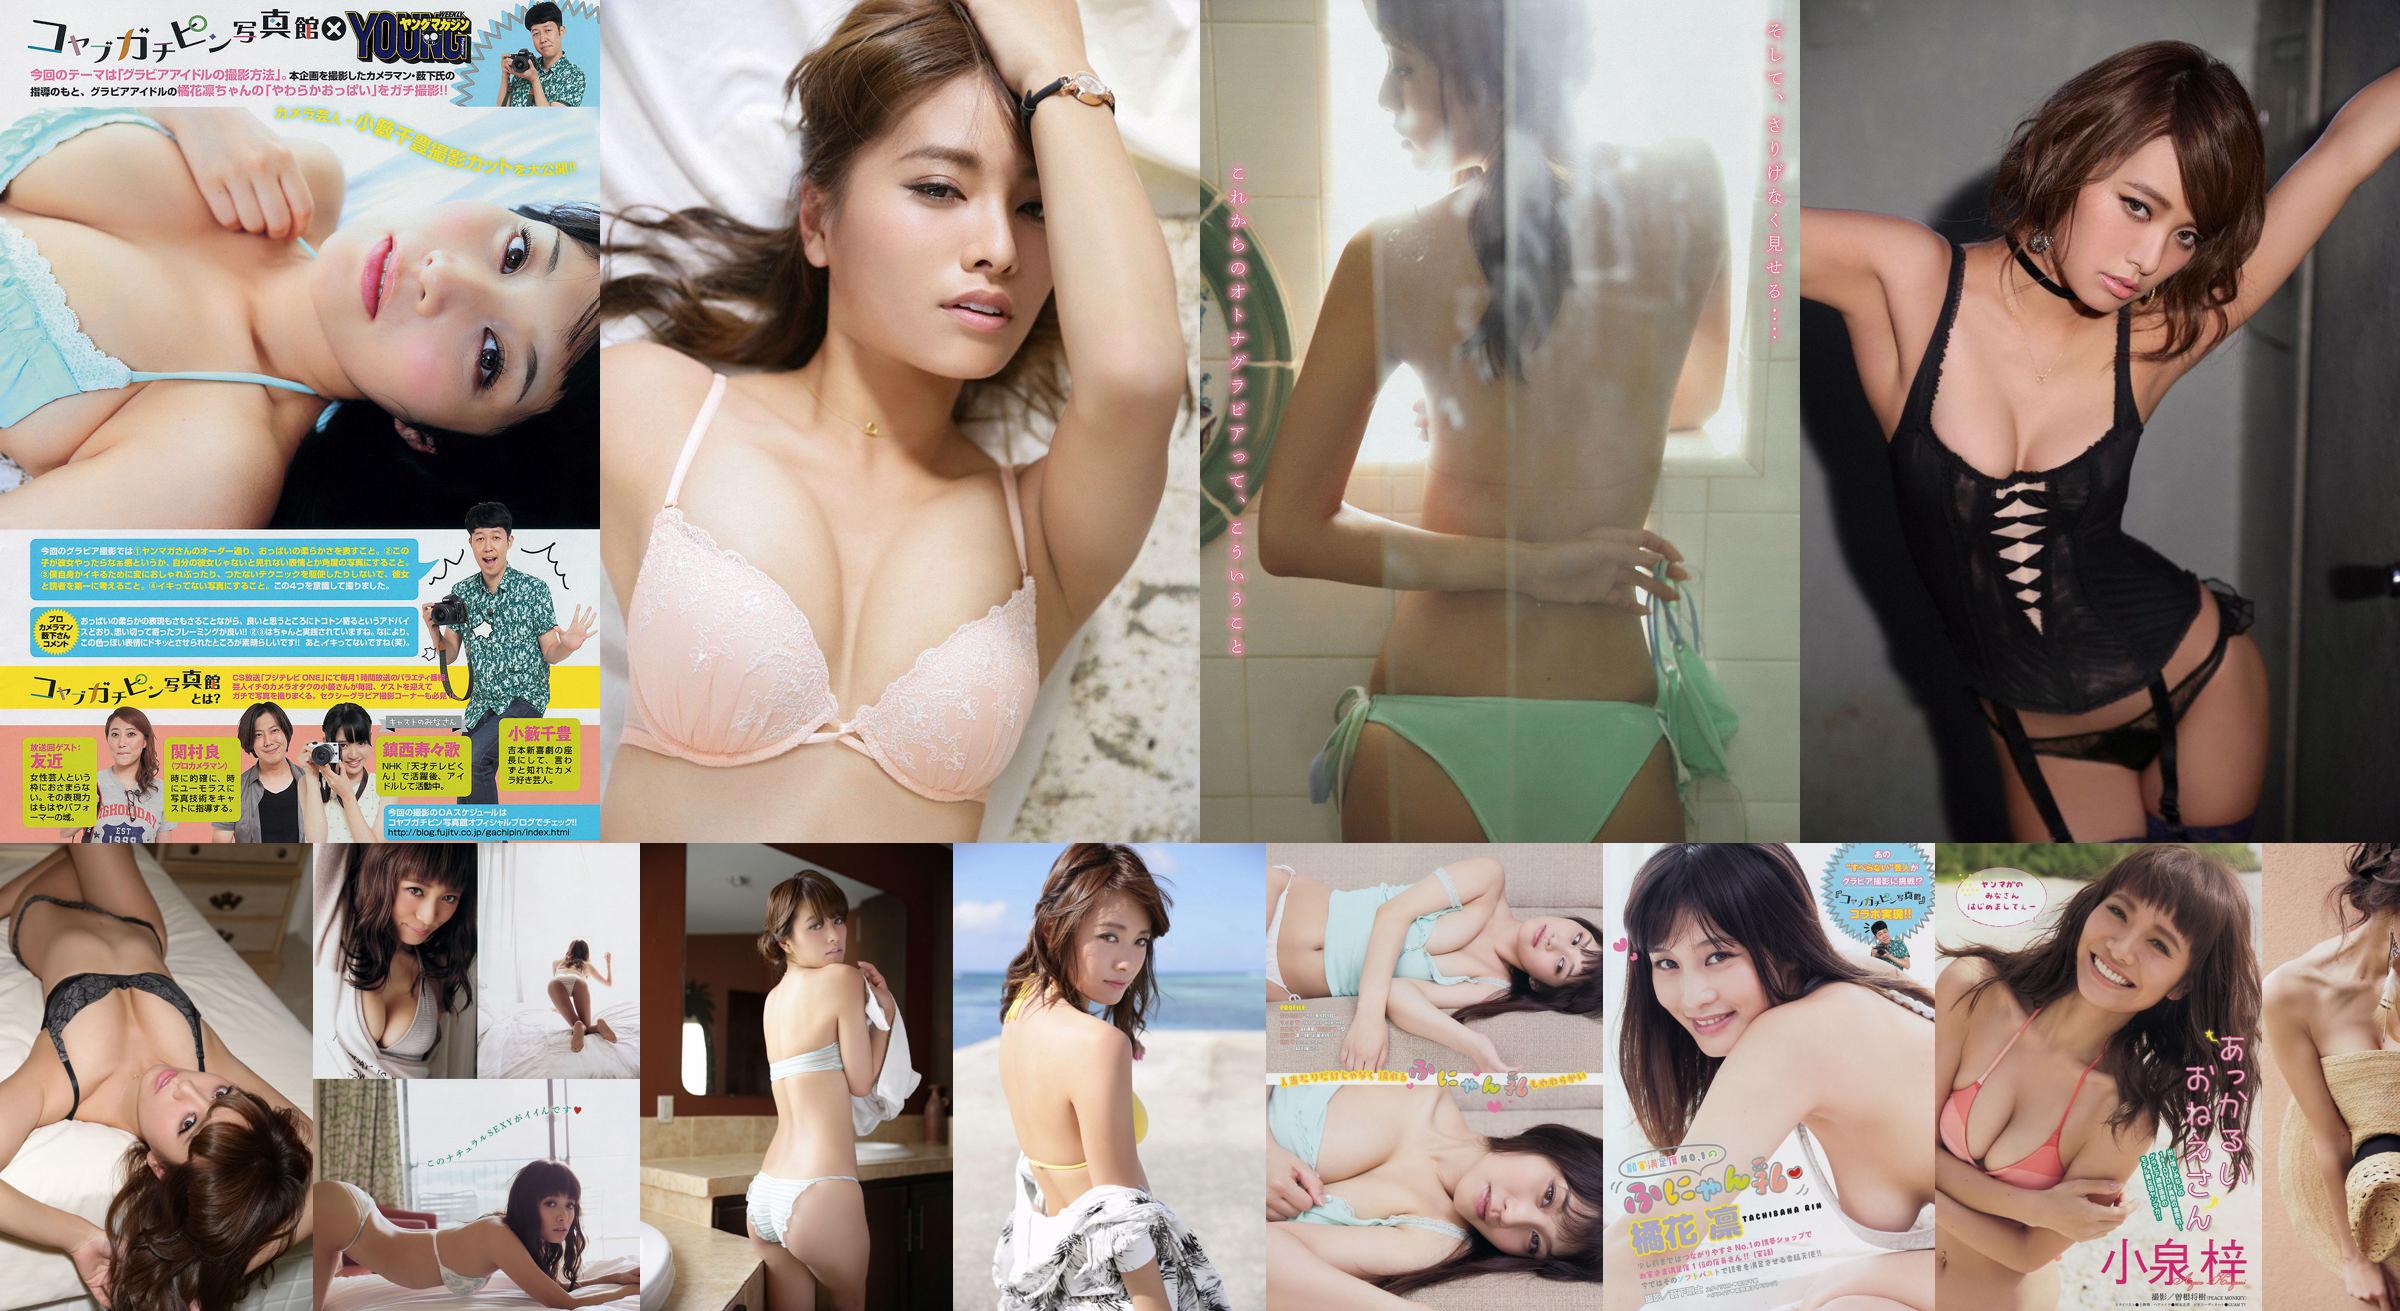 [Young Magazine] Azusa Koizumi Tachibana Rin 2014 No.43 Photo Magazine No.c651cf หน้า 3